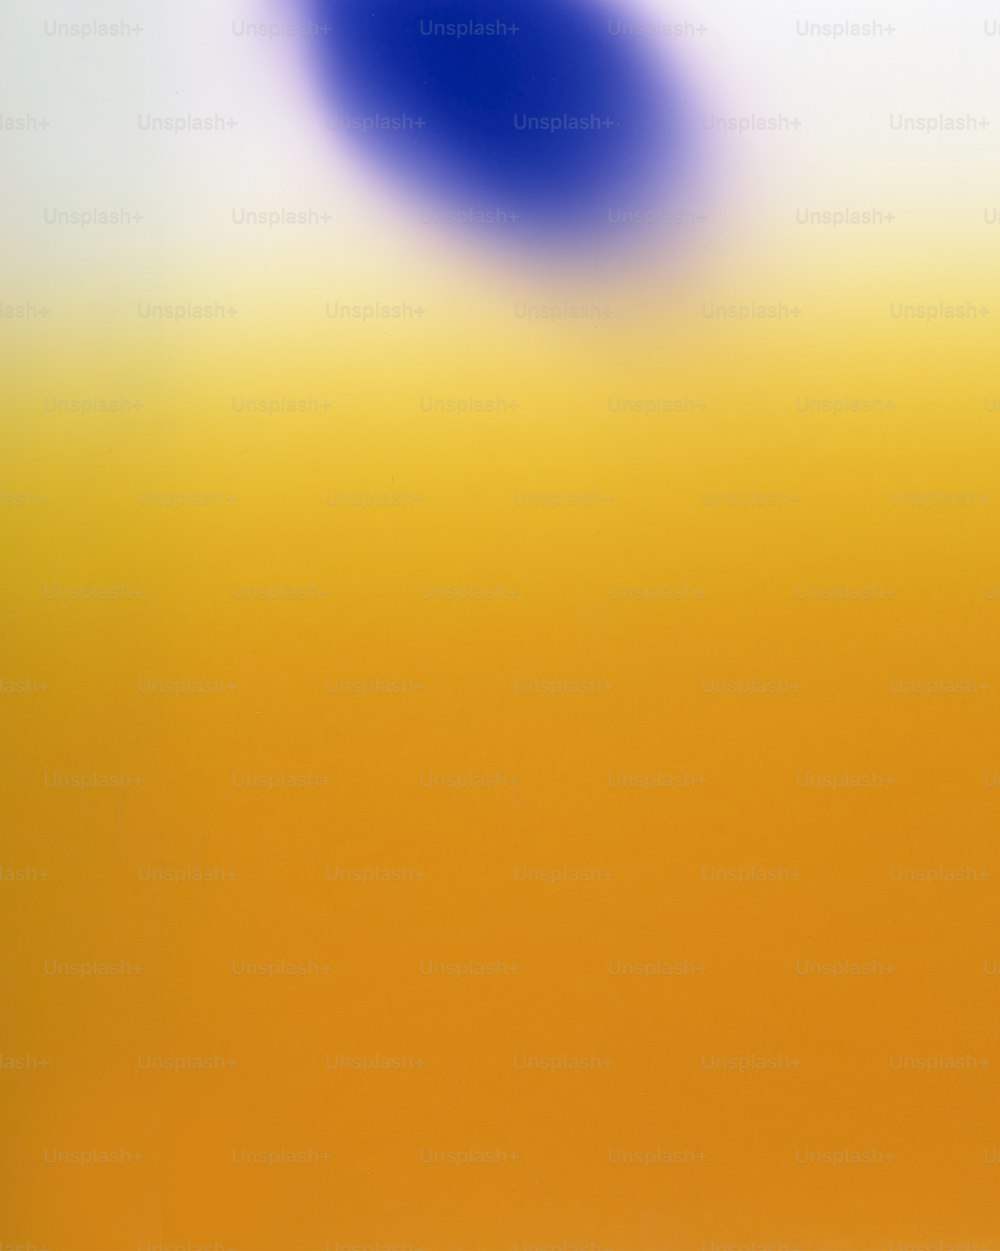 Una imagen borrosa de un fondo amarillo y azul